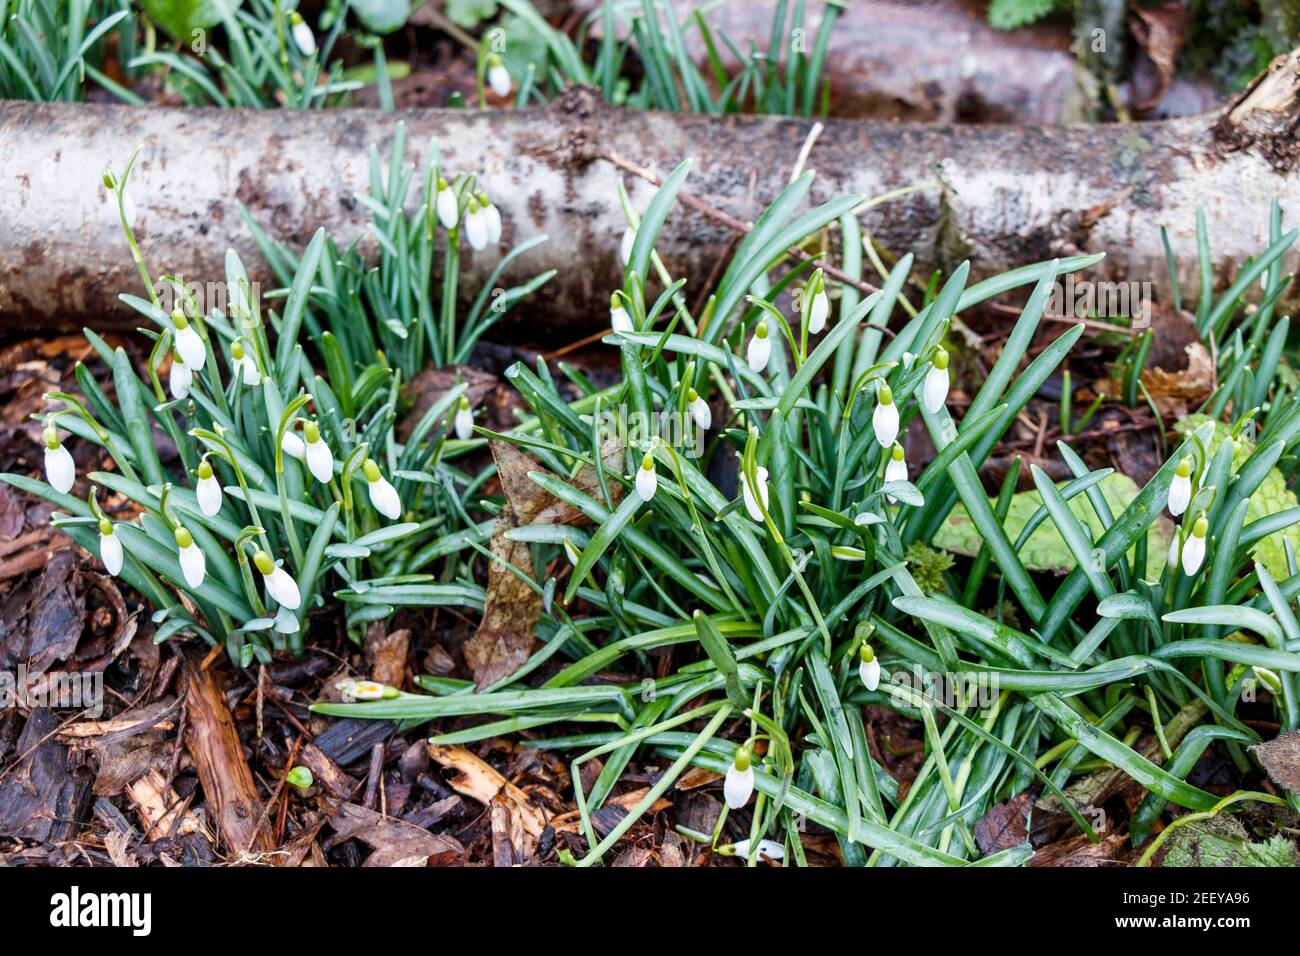 Le prime gocce di neve nei Sunnyside Community Gardens mentre il tempo più caldo incoraggia la fioritura precedente, Londra, Regno Unito. Le piante stanno fiorendo un mese prima nel Regno Unito mentre il clima si riscalda, uno studio ha trovato. Foto Stock